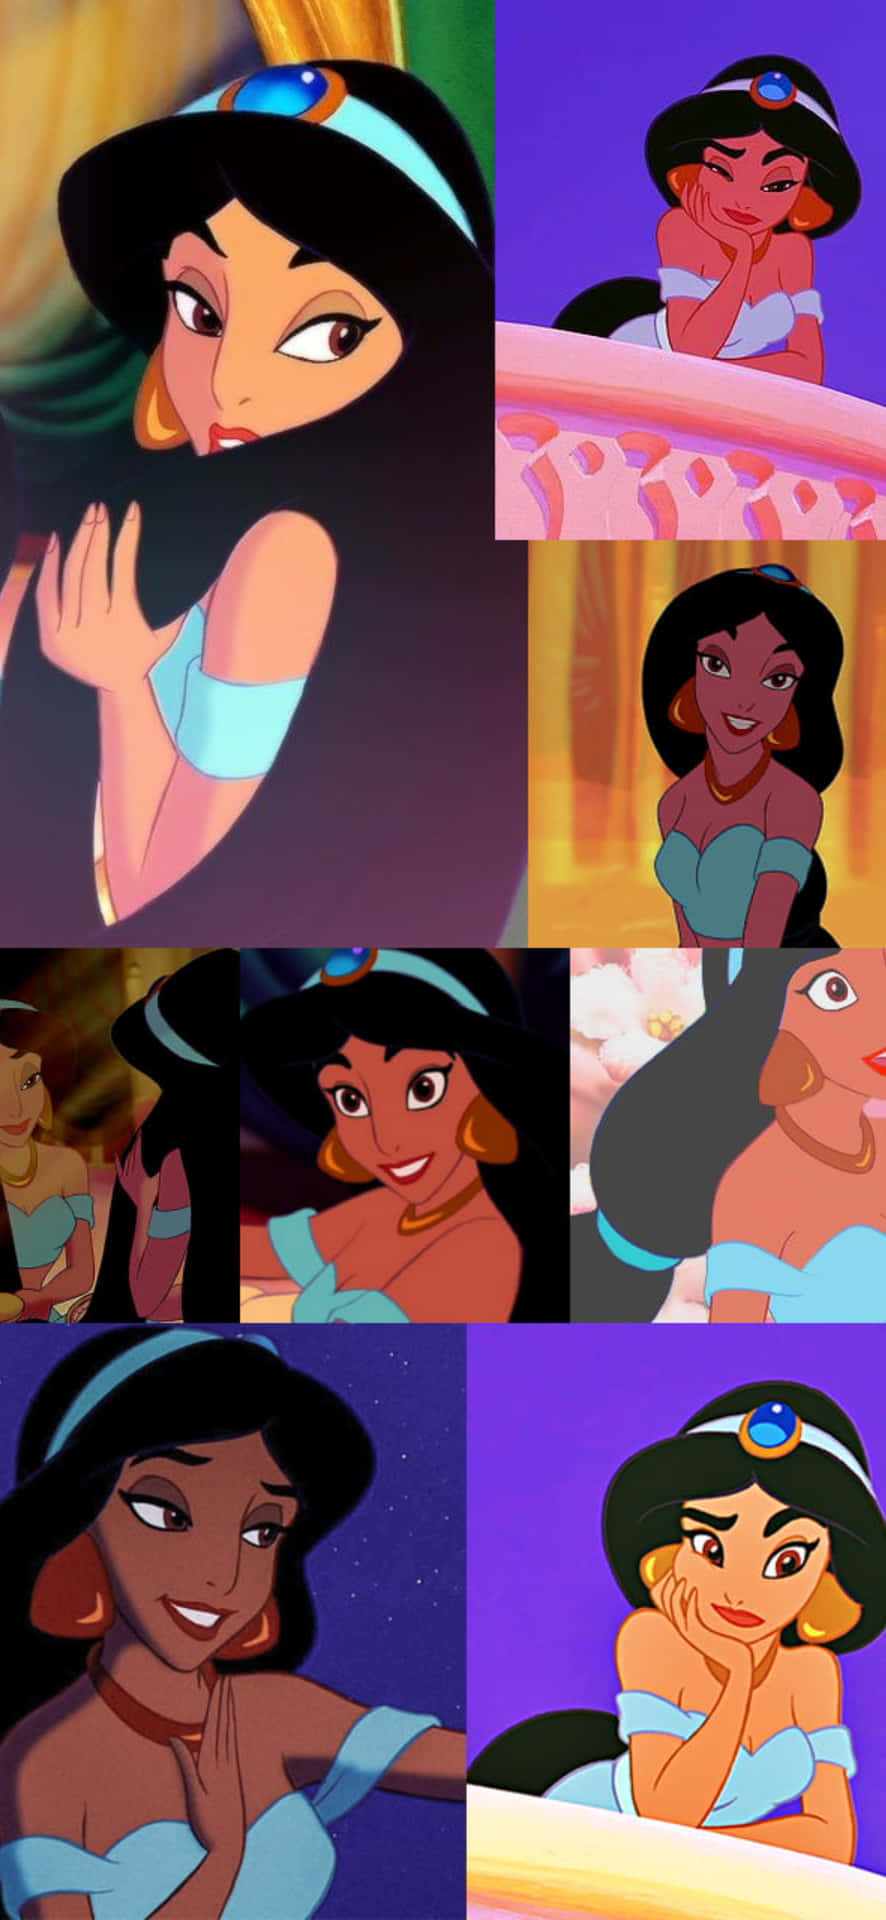 Et collage af billeder af jasmin fra Disney-film Wallpaper